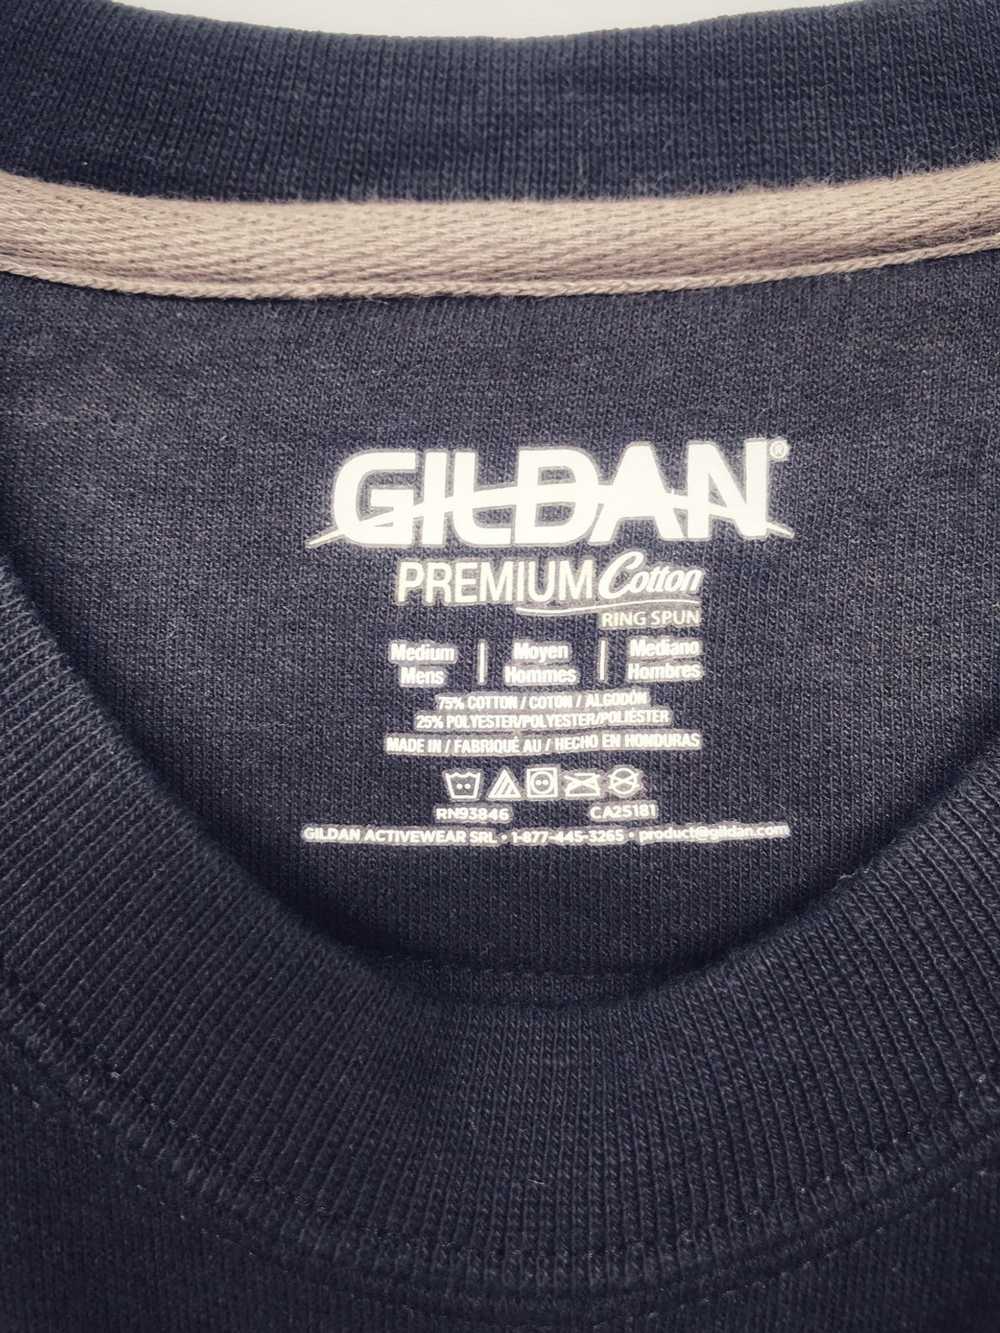 Band Tees × Gildan × Rock Band Navy Blue FALL OUT… - image 10